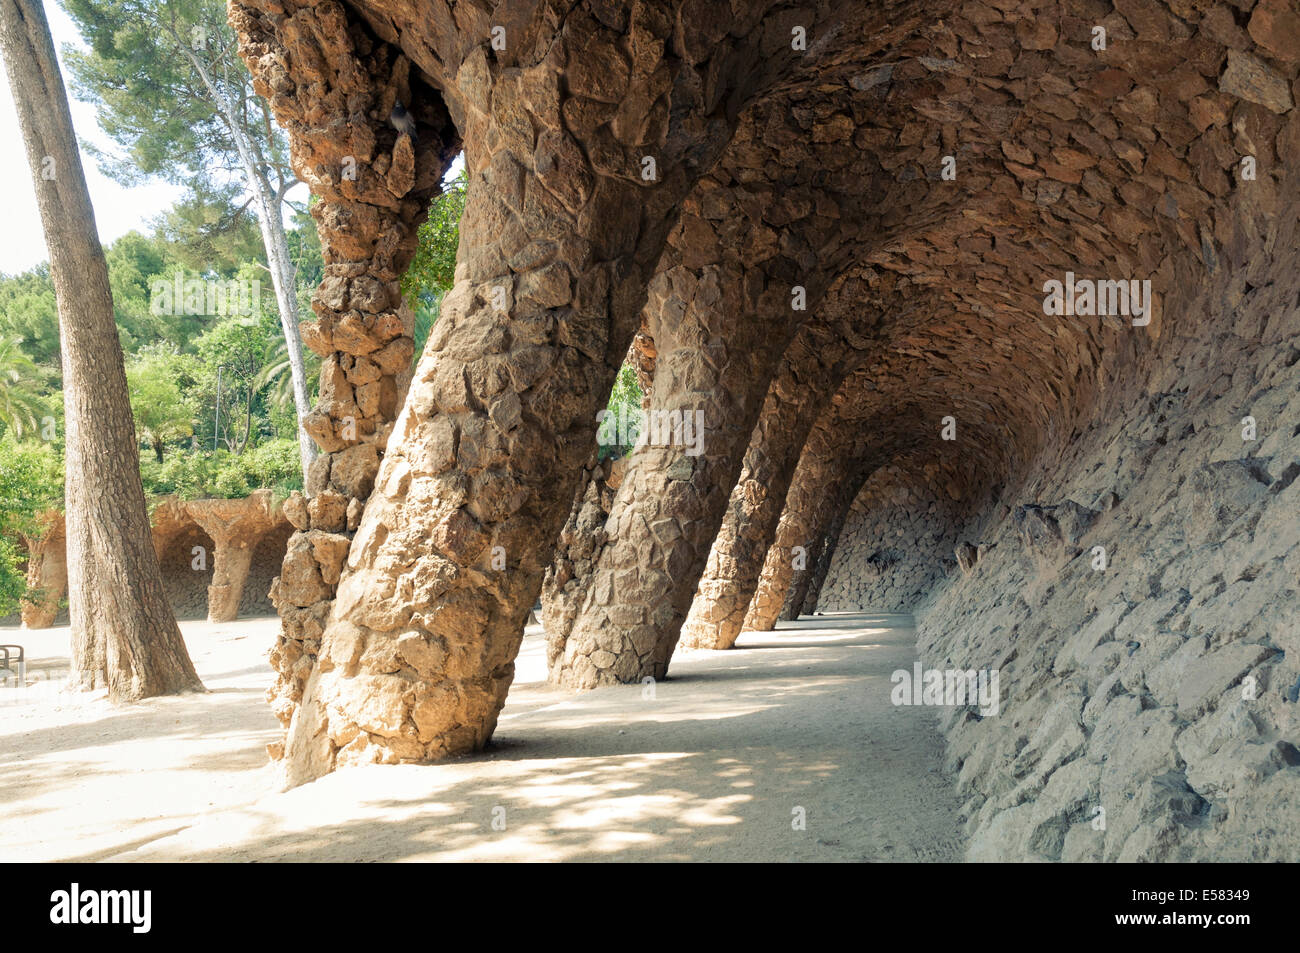 Torcer los pilares de roca admite dentro del famoso Parque Guell emblemático de Barcelona Foto de stock